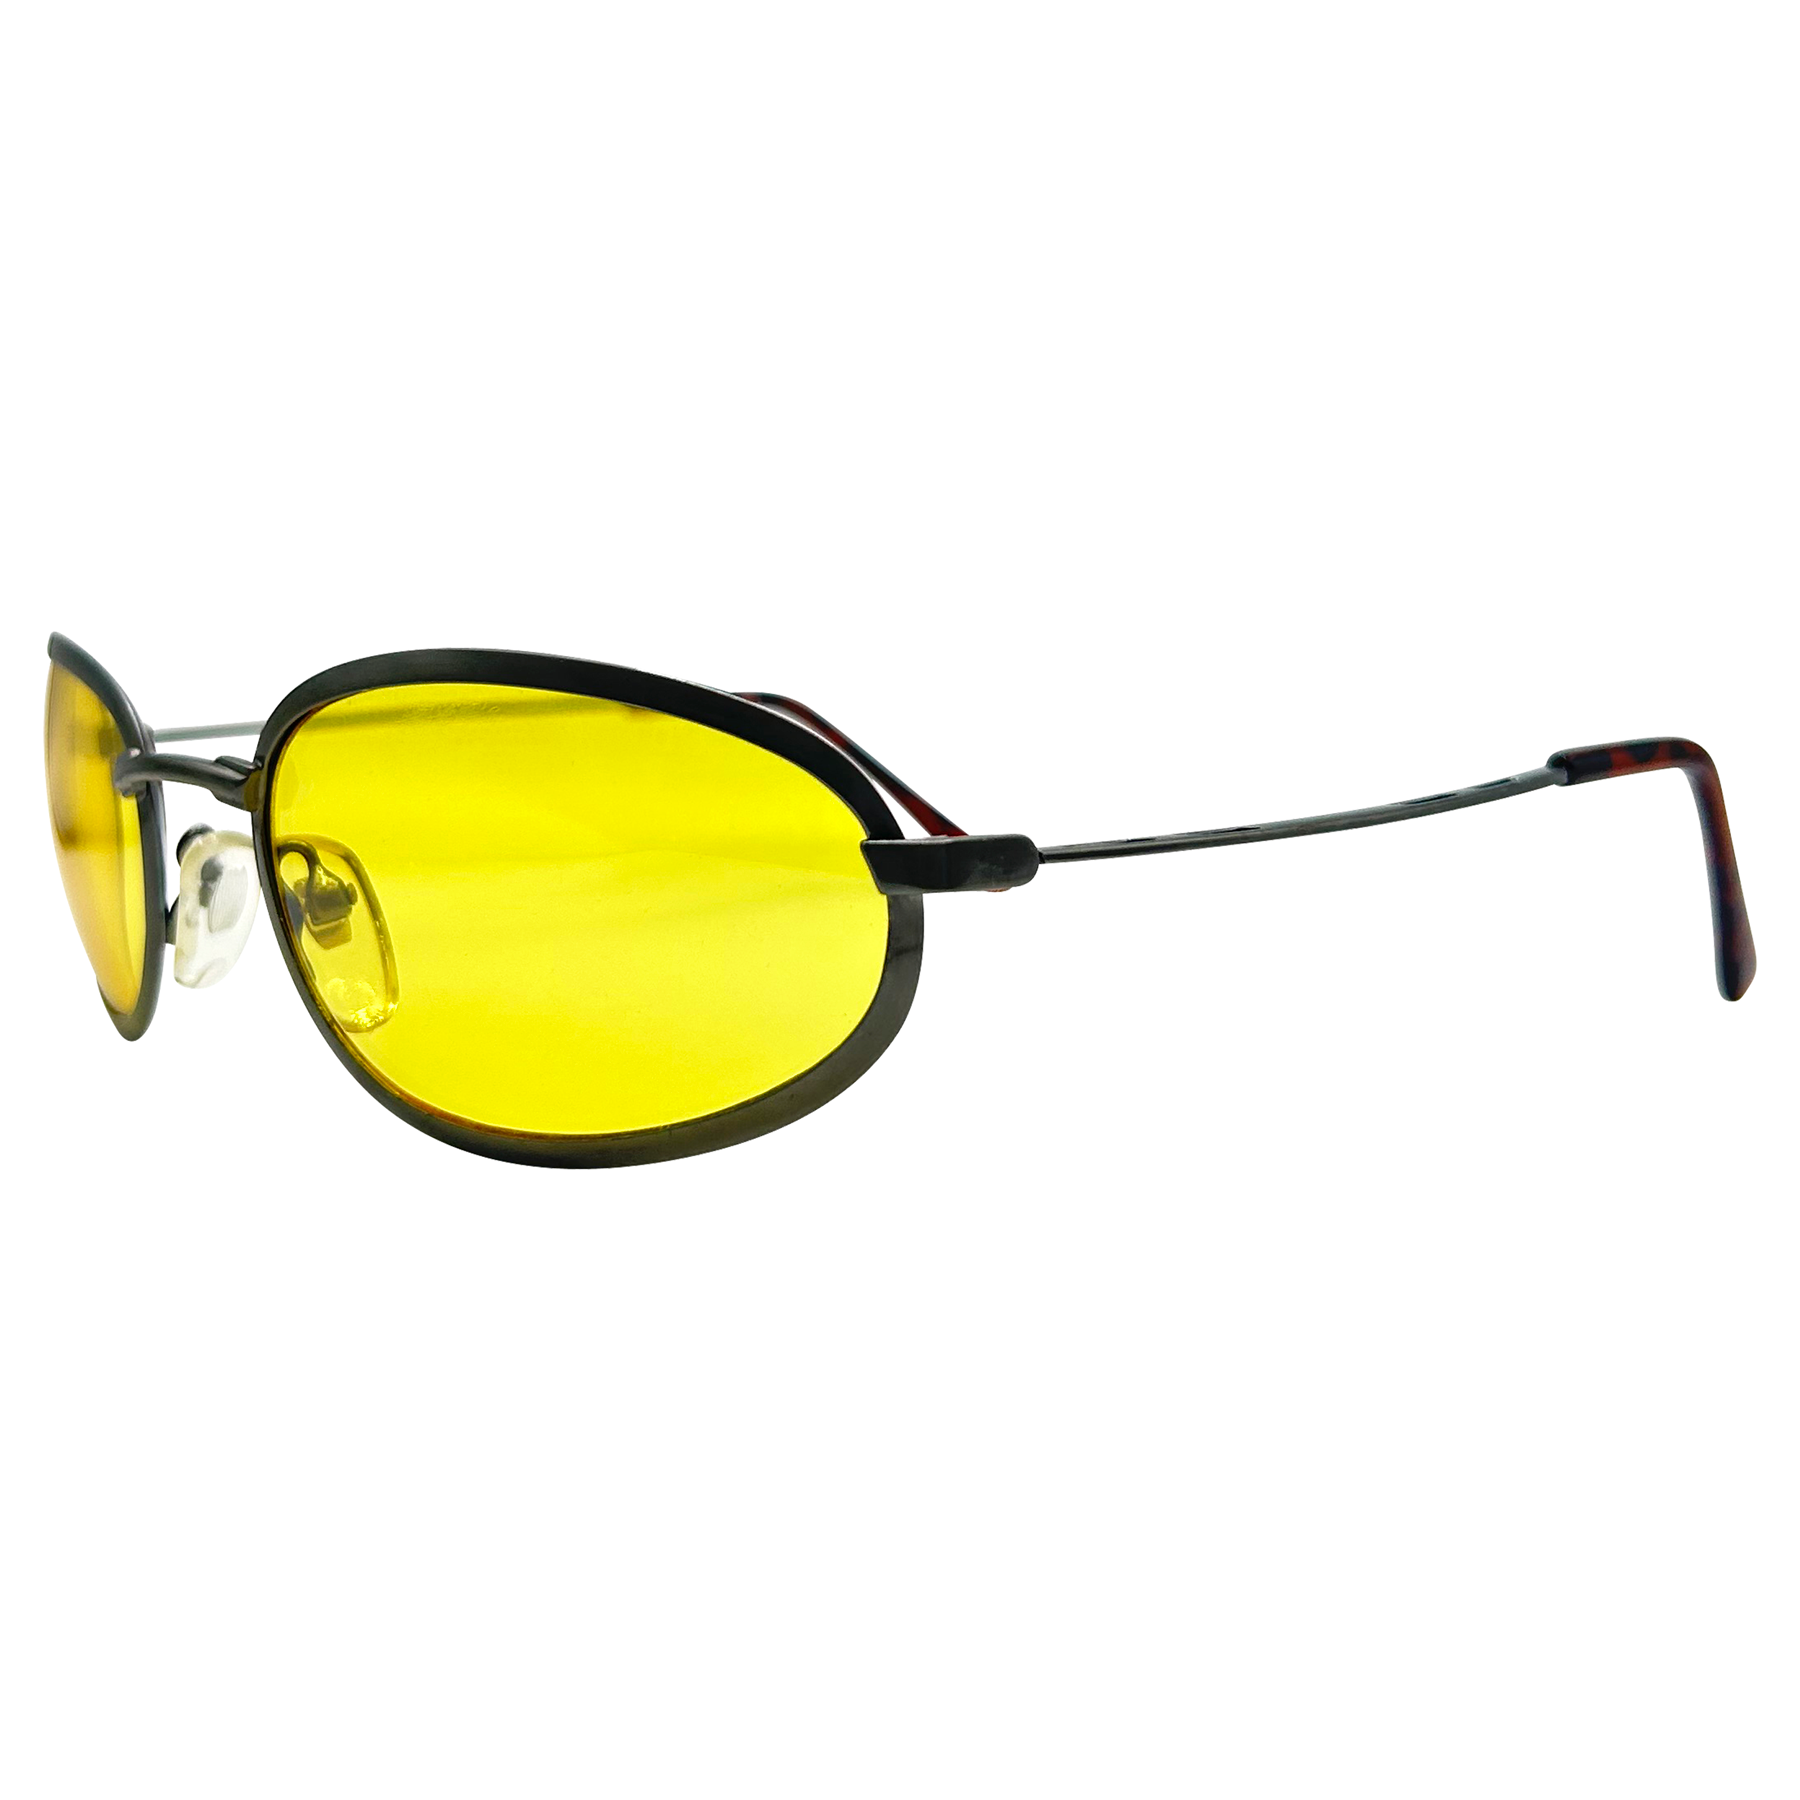 TWEETY Round Sunglasses | Blue-Blocker | Night Driving